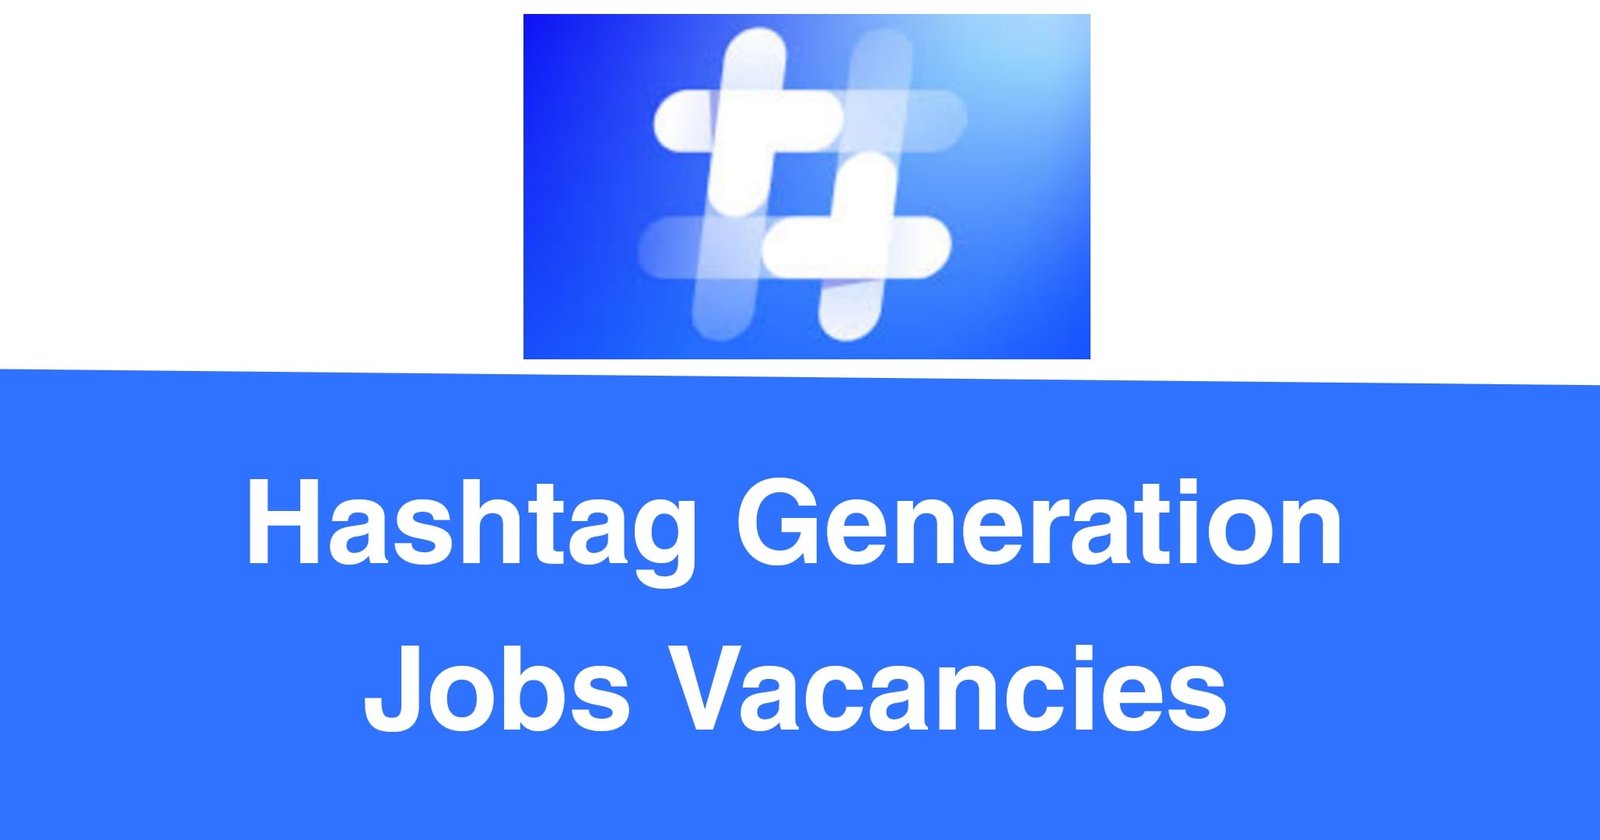 Hashtag Generation Jobs Vacancies